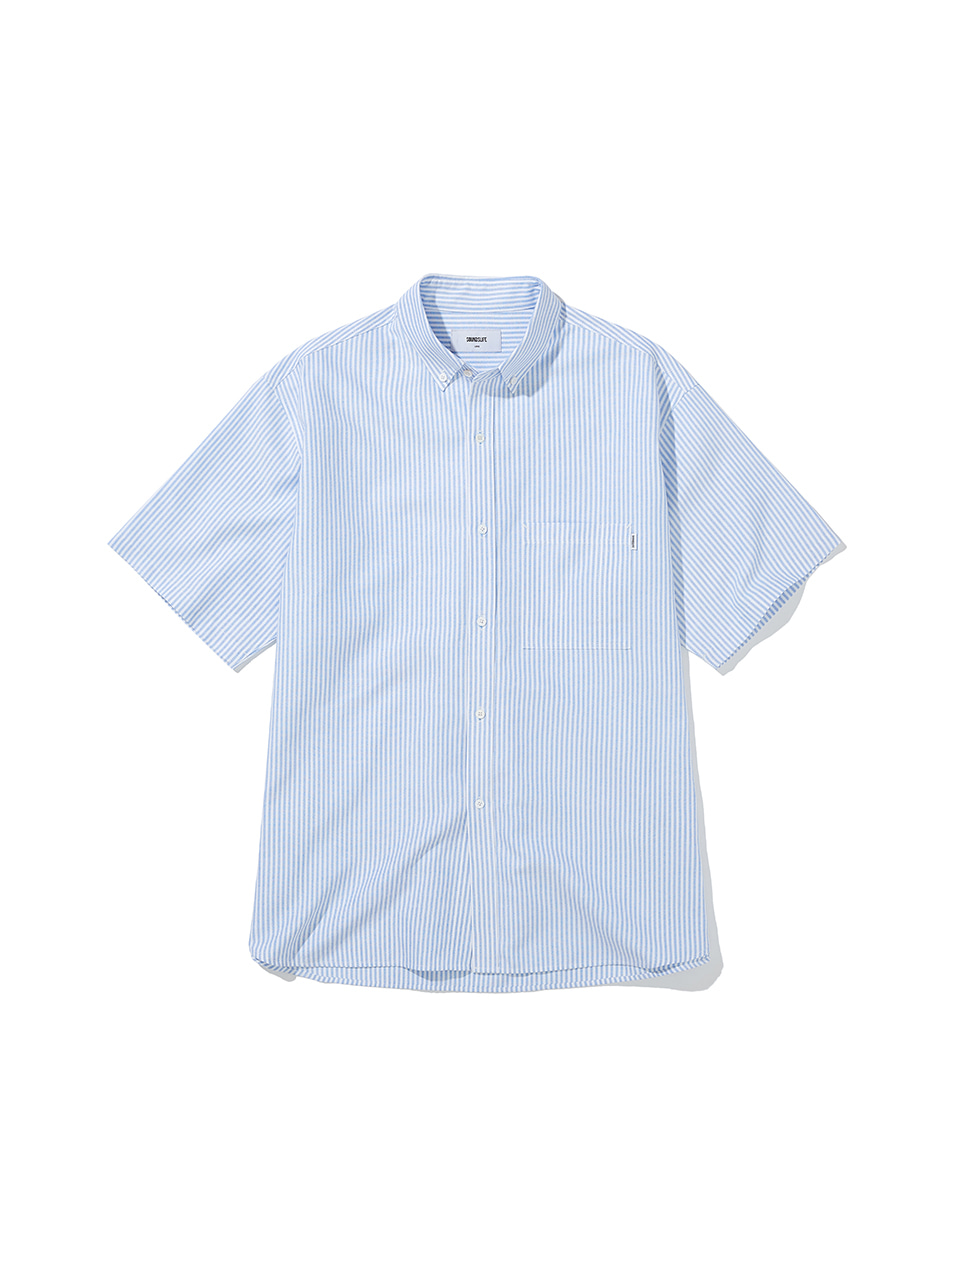 SOUNDSLIFE - Big fit Oxford Stripe Shirt Blue